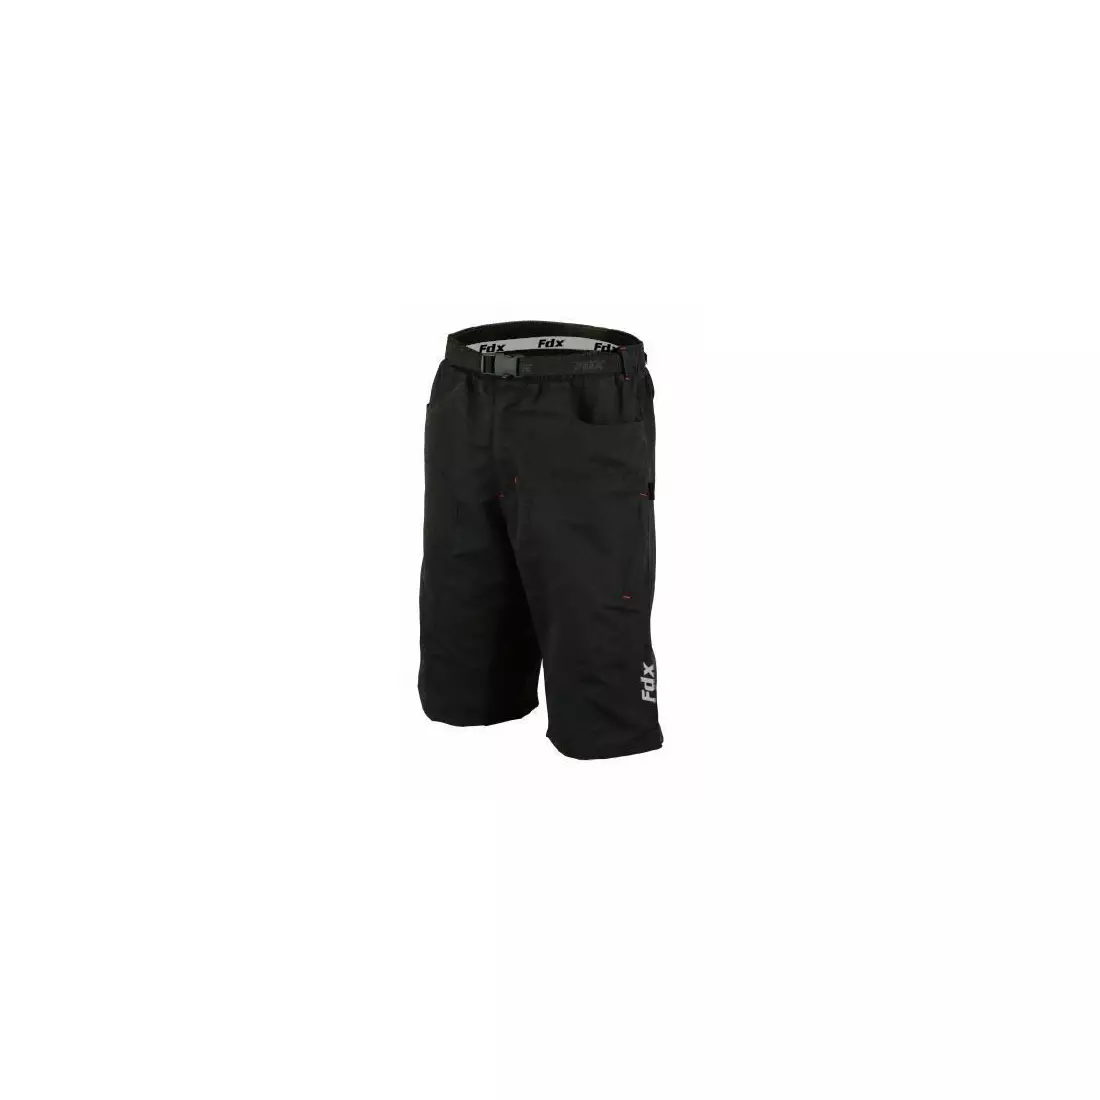 FDX 2010 men's MTB cycling shorts black